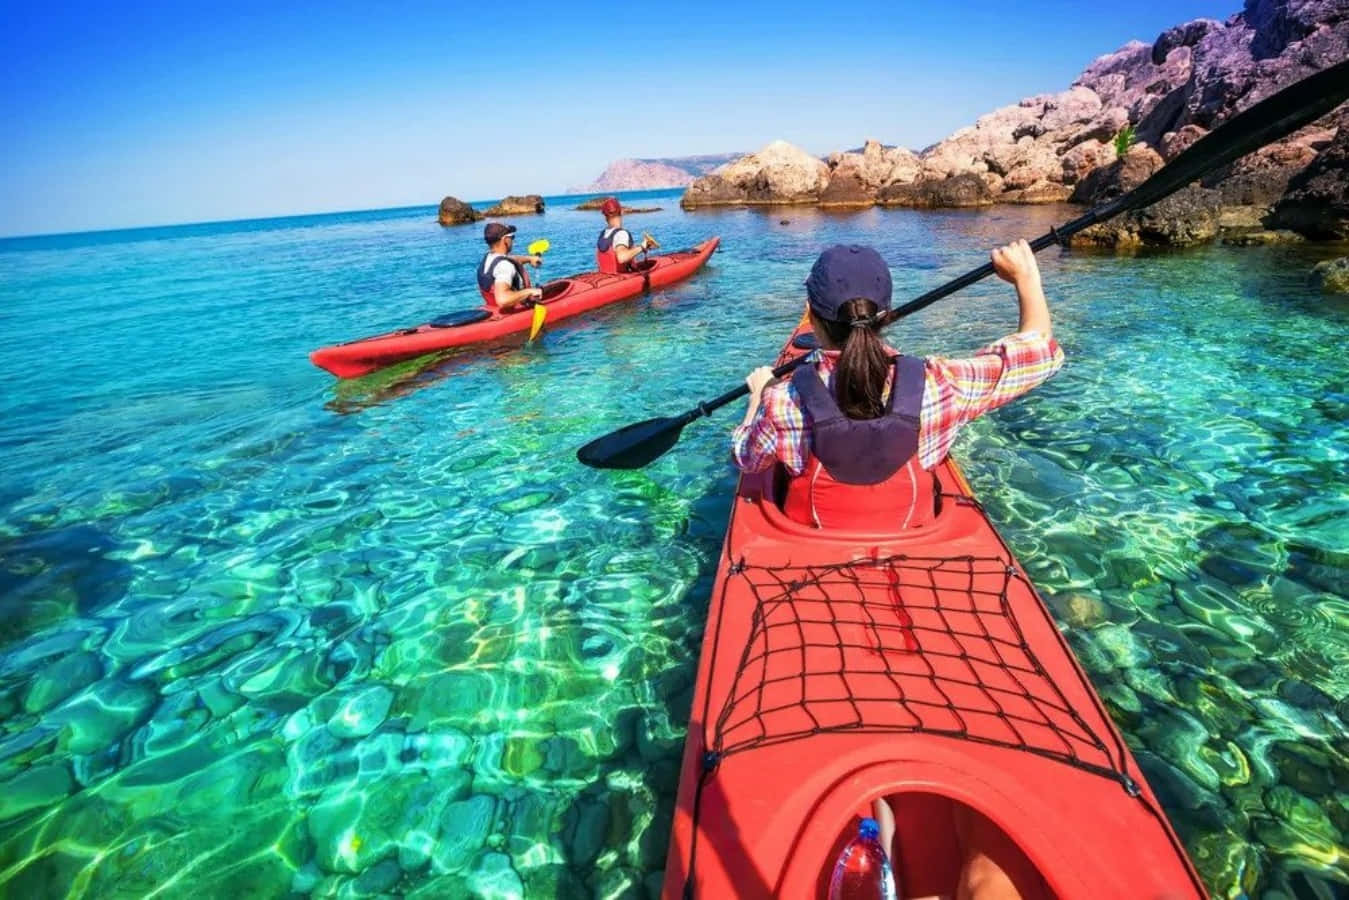 Dospersonas Haciendo Kayak En El Agua Clara Y Azul